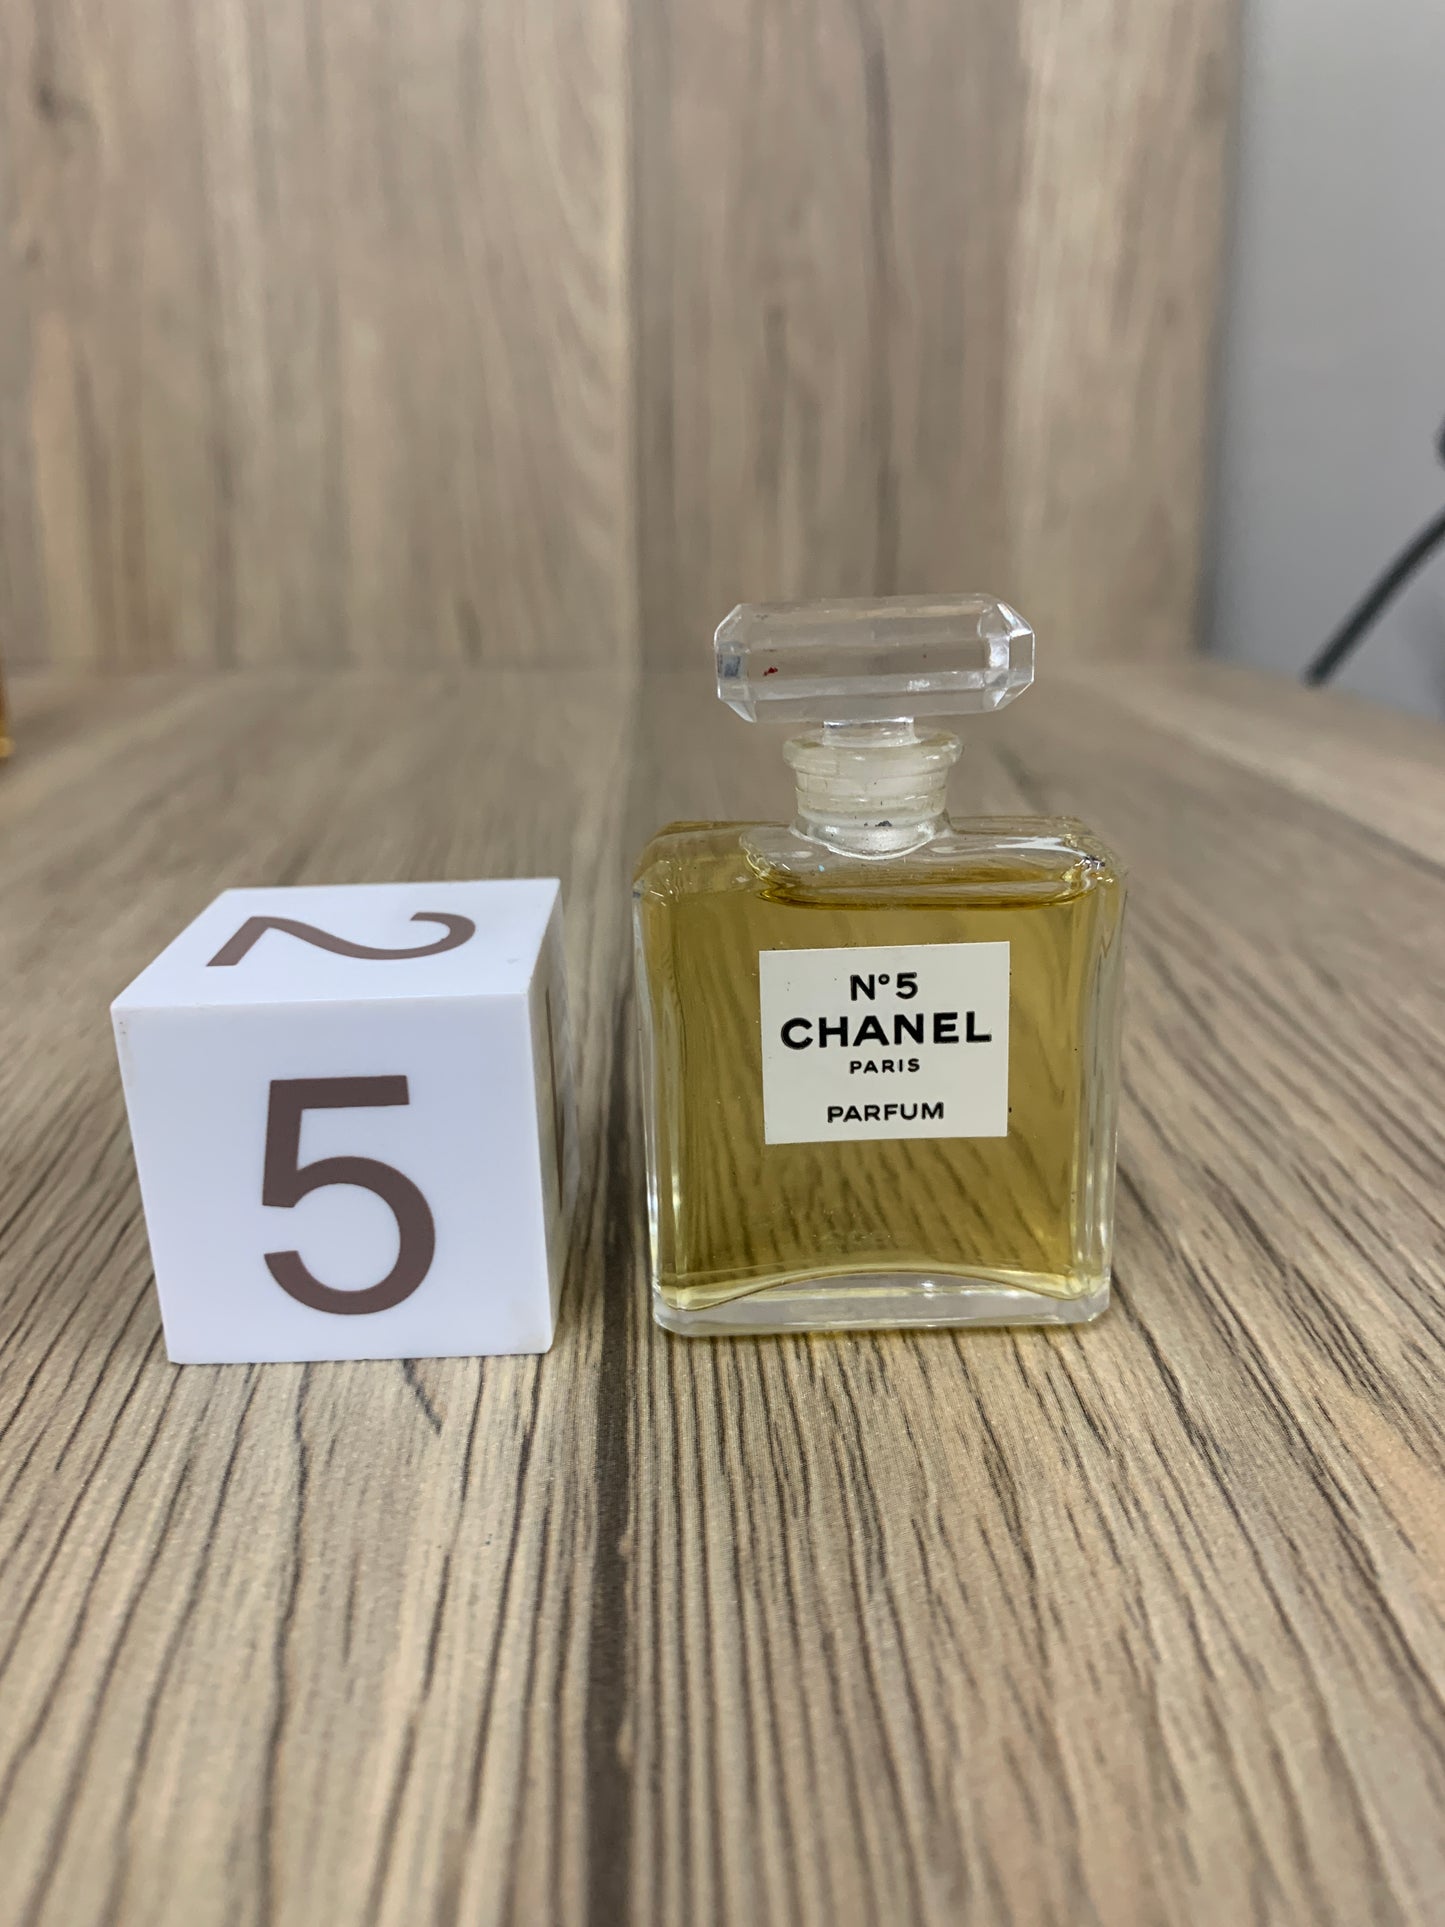 Get the best deals on CHANEL Chanel No 5 Eau de Toilette for Women